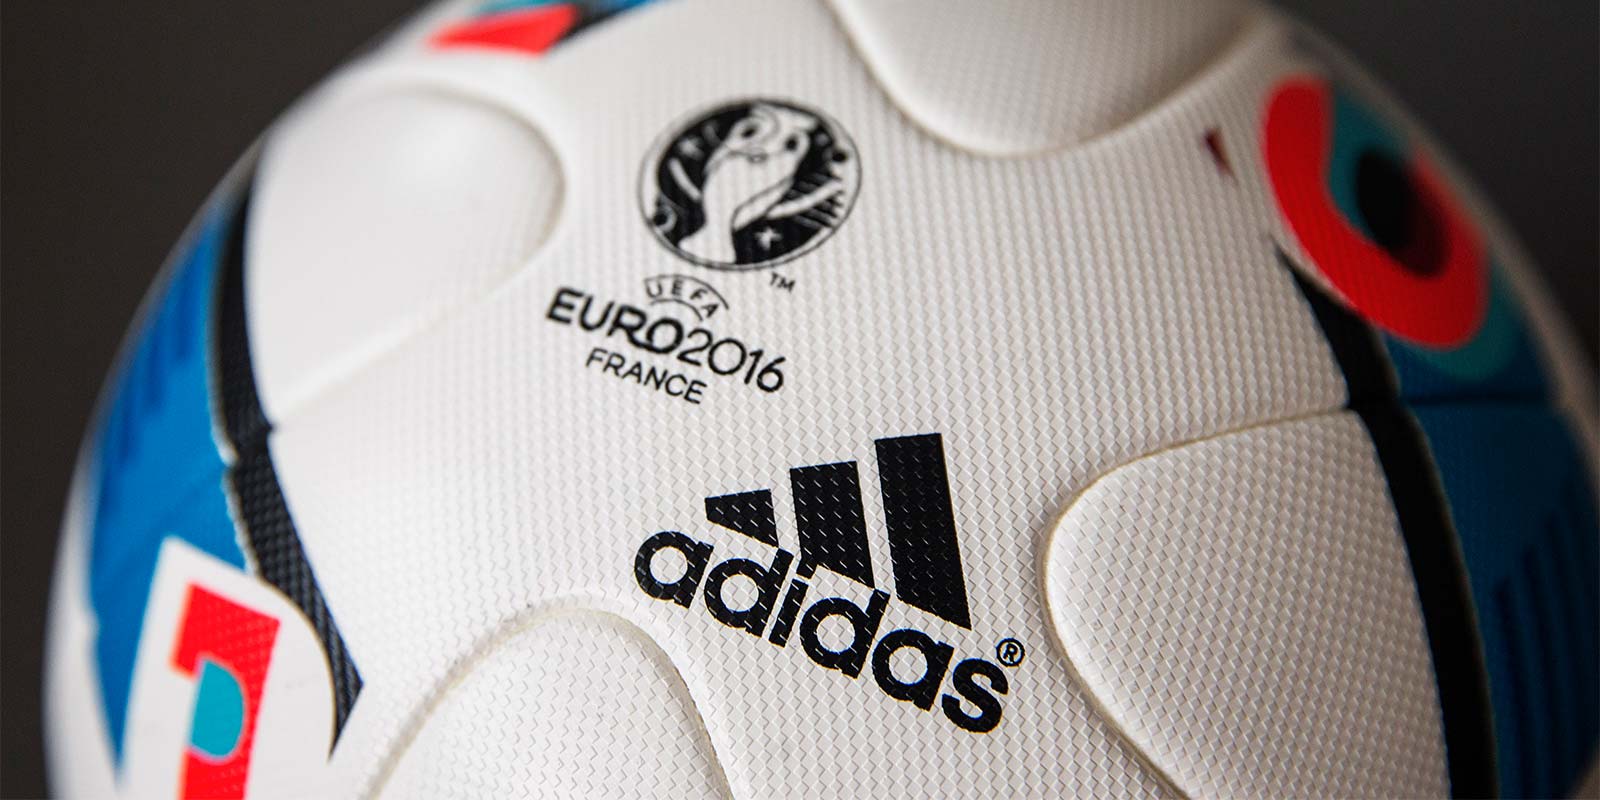 adidas-beau-jeu-euro-2016-ball-5.jpg